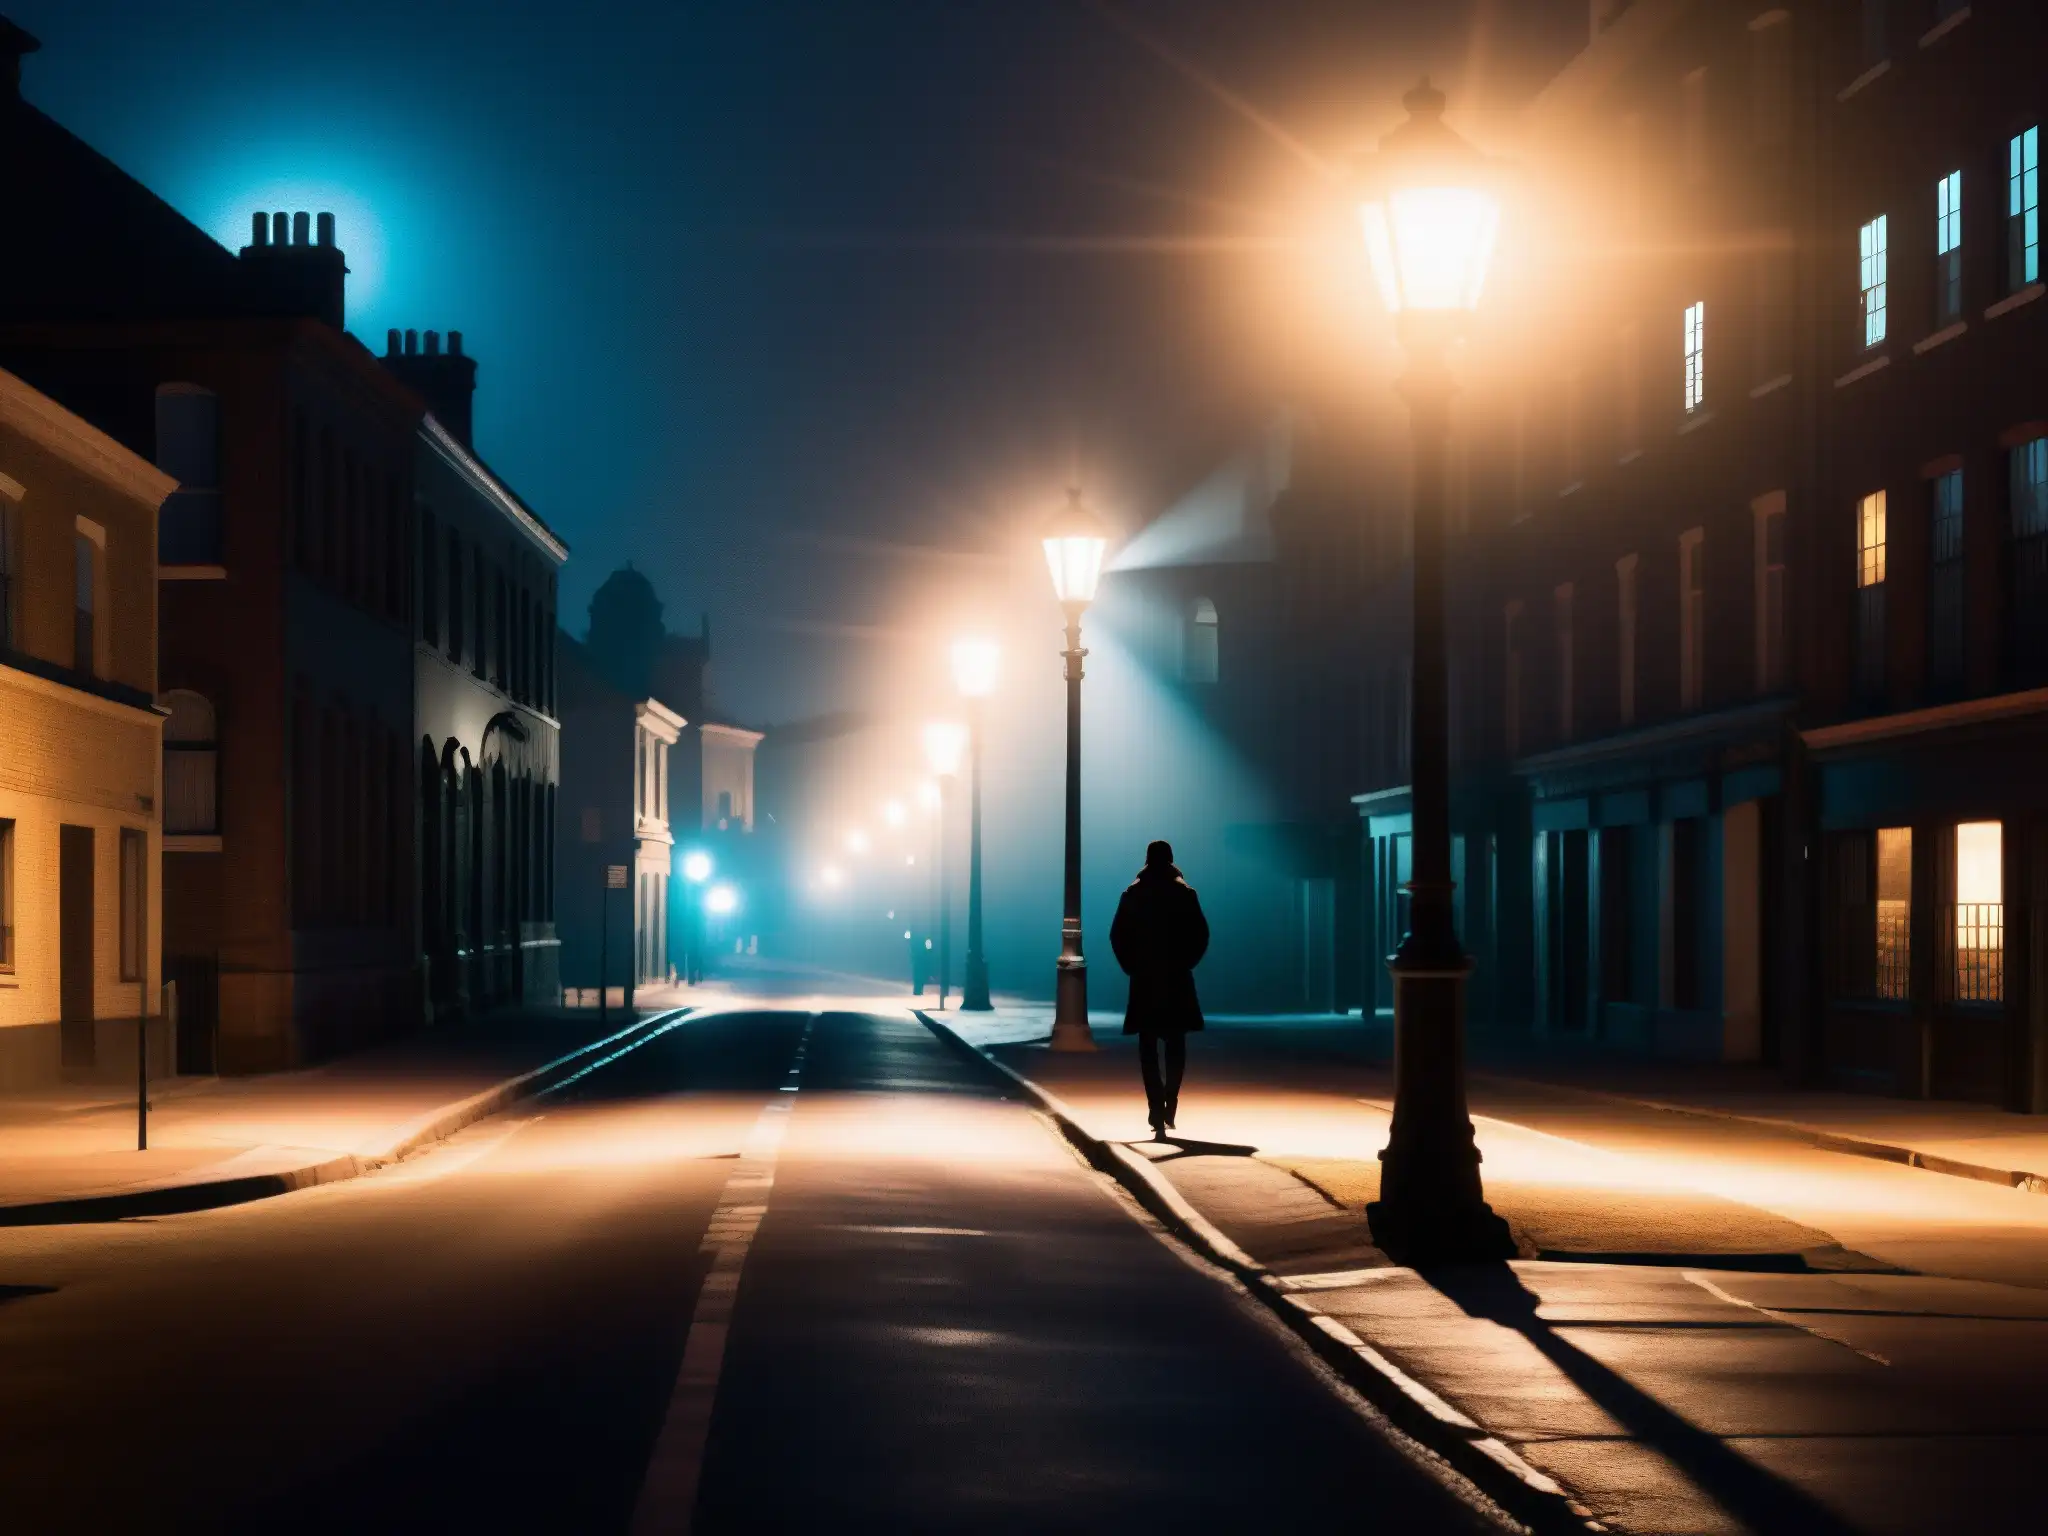 Una imagen nocturna de una solitaria figura bajo una farola en una calle oscura, transmitiendo la perpetuación de supersticiones en leyendas urbanas